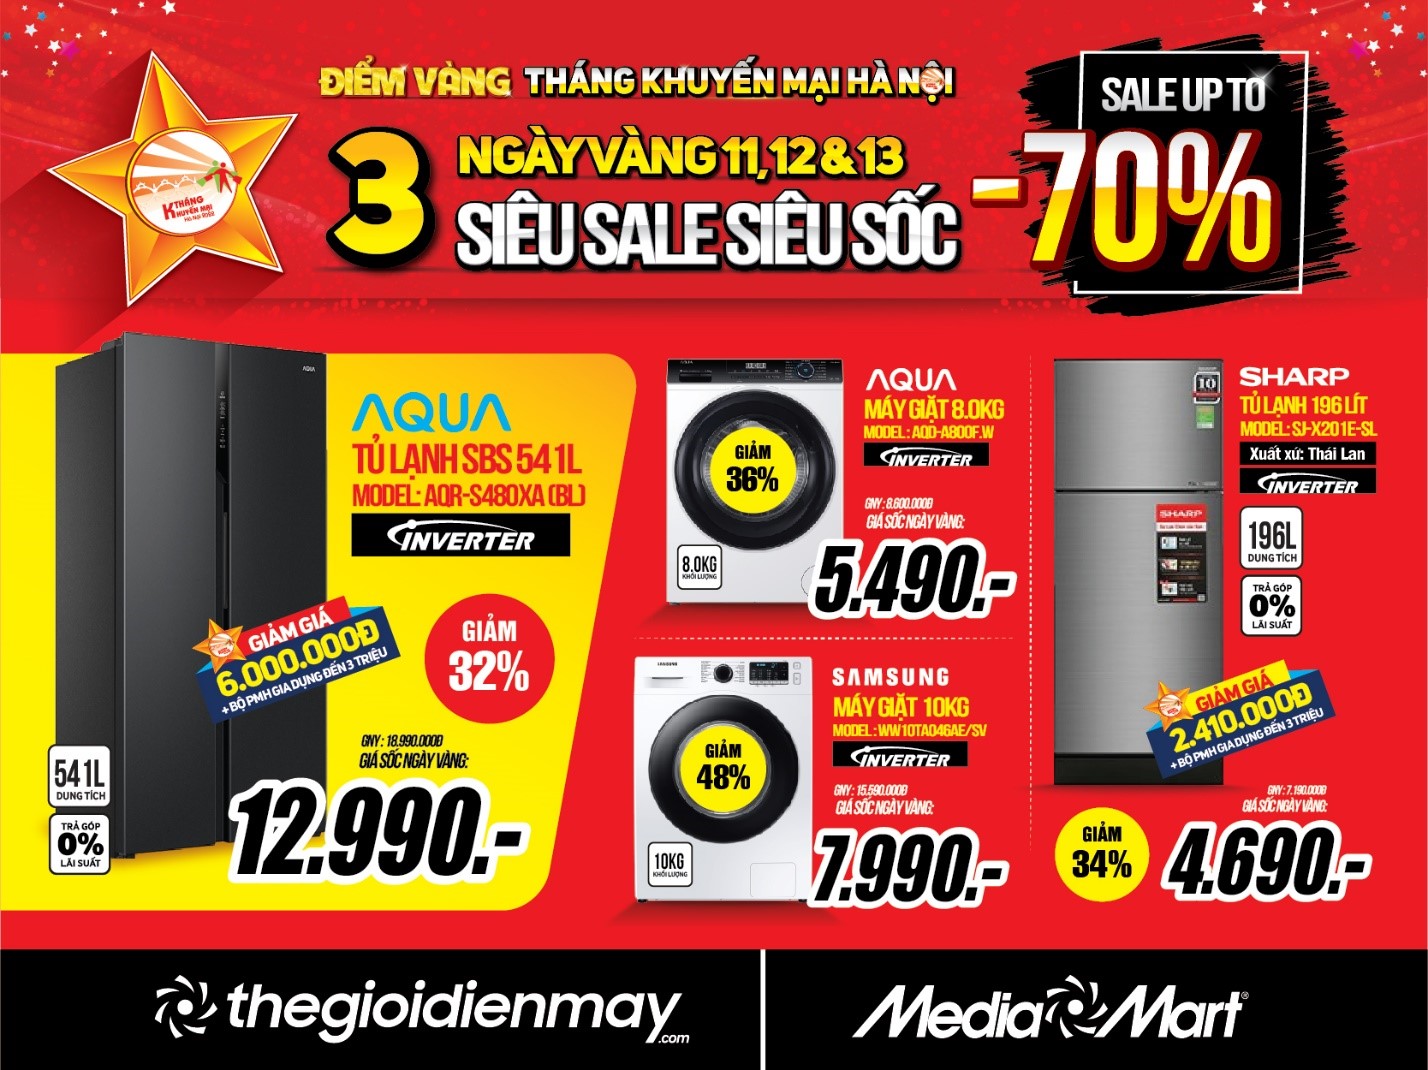 mediamart 3 days sales 3